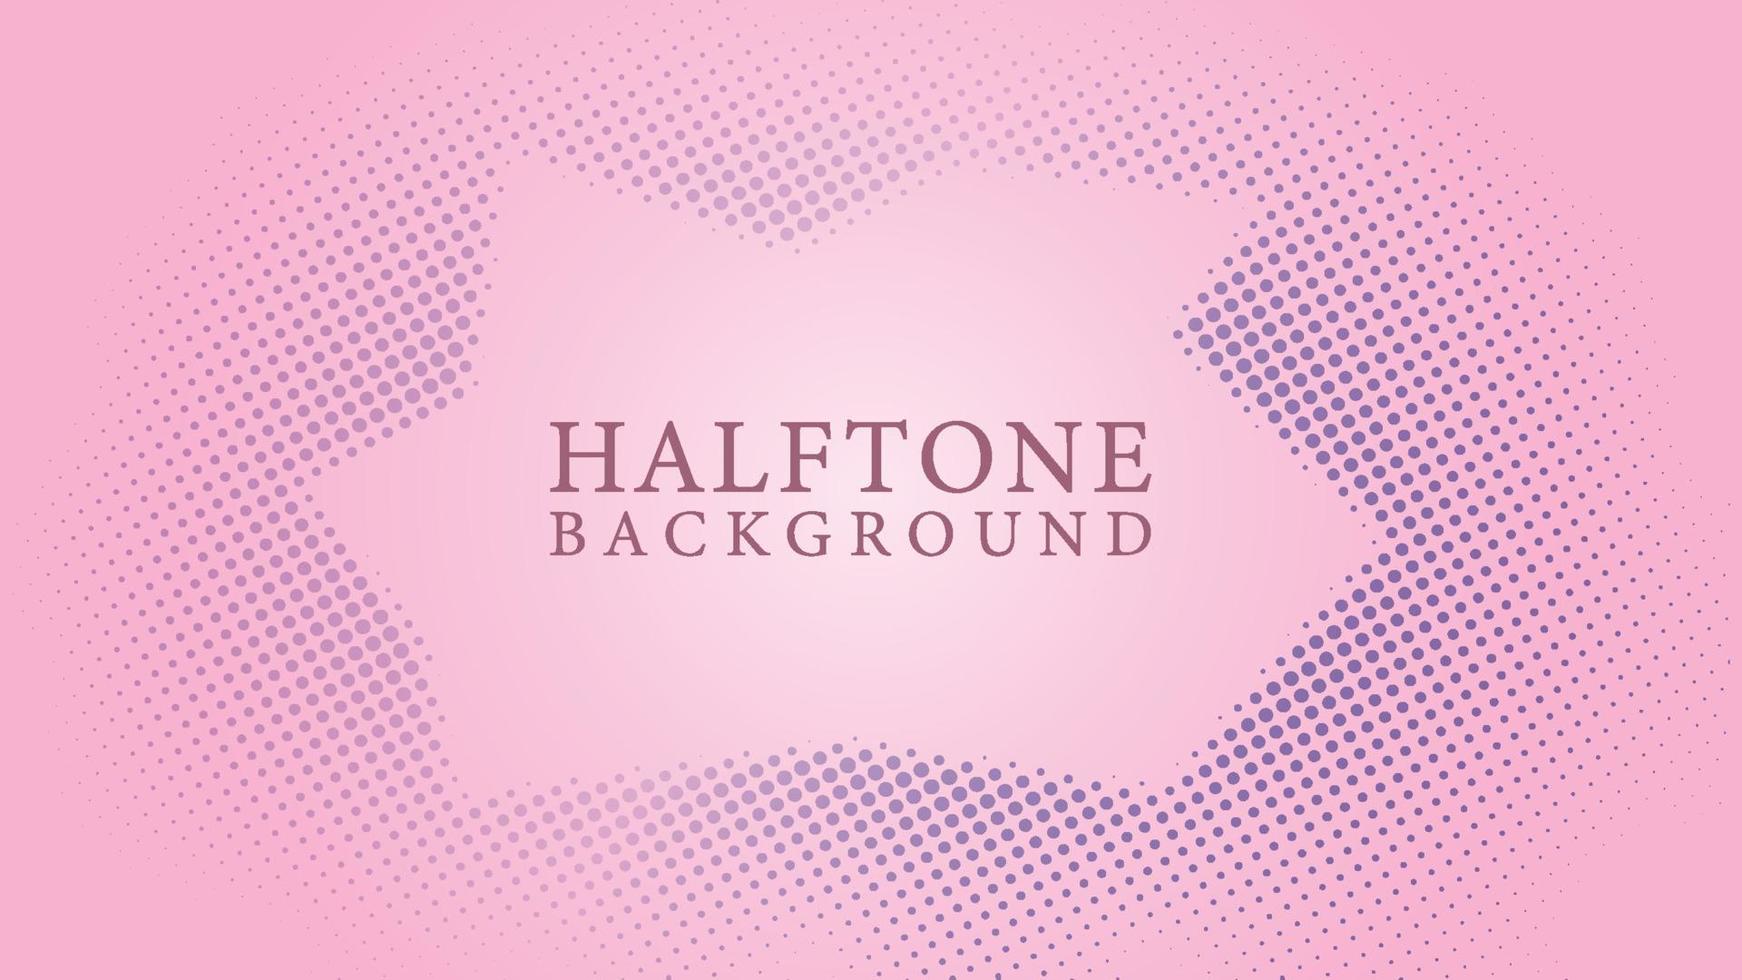 halftone frame achtergrond ontwerpsjabloon, abstracte stippen patroon illustratie, retro textuur element, violet roze gradatie, romantische kleuren vector